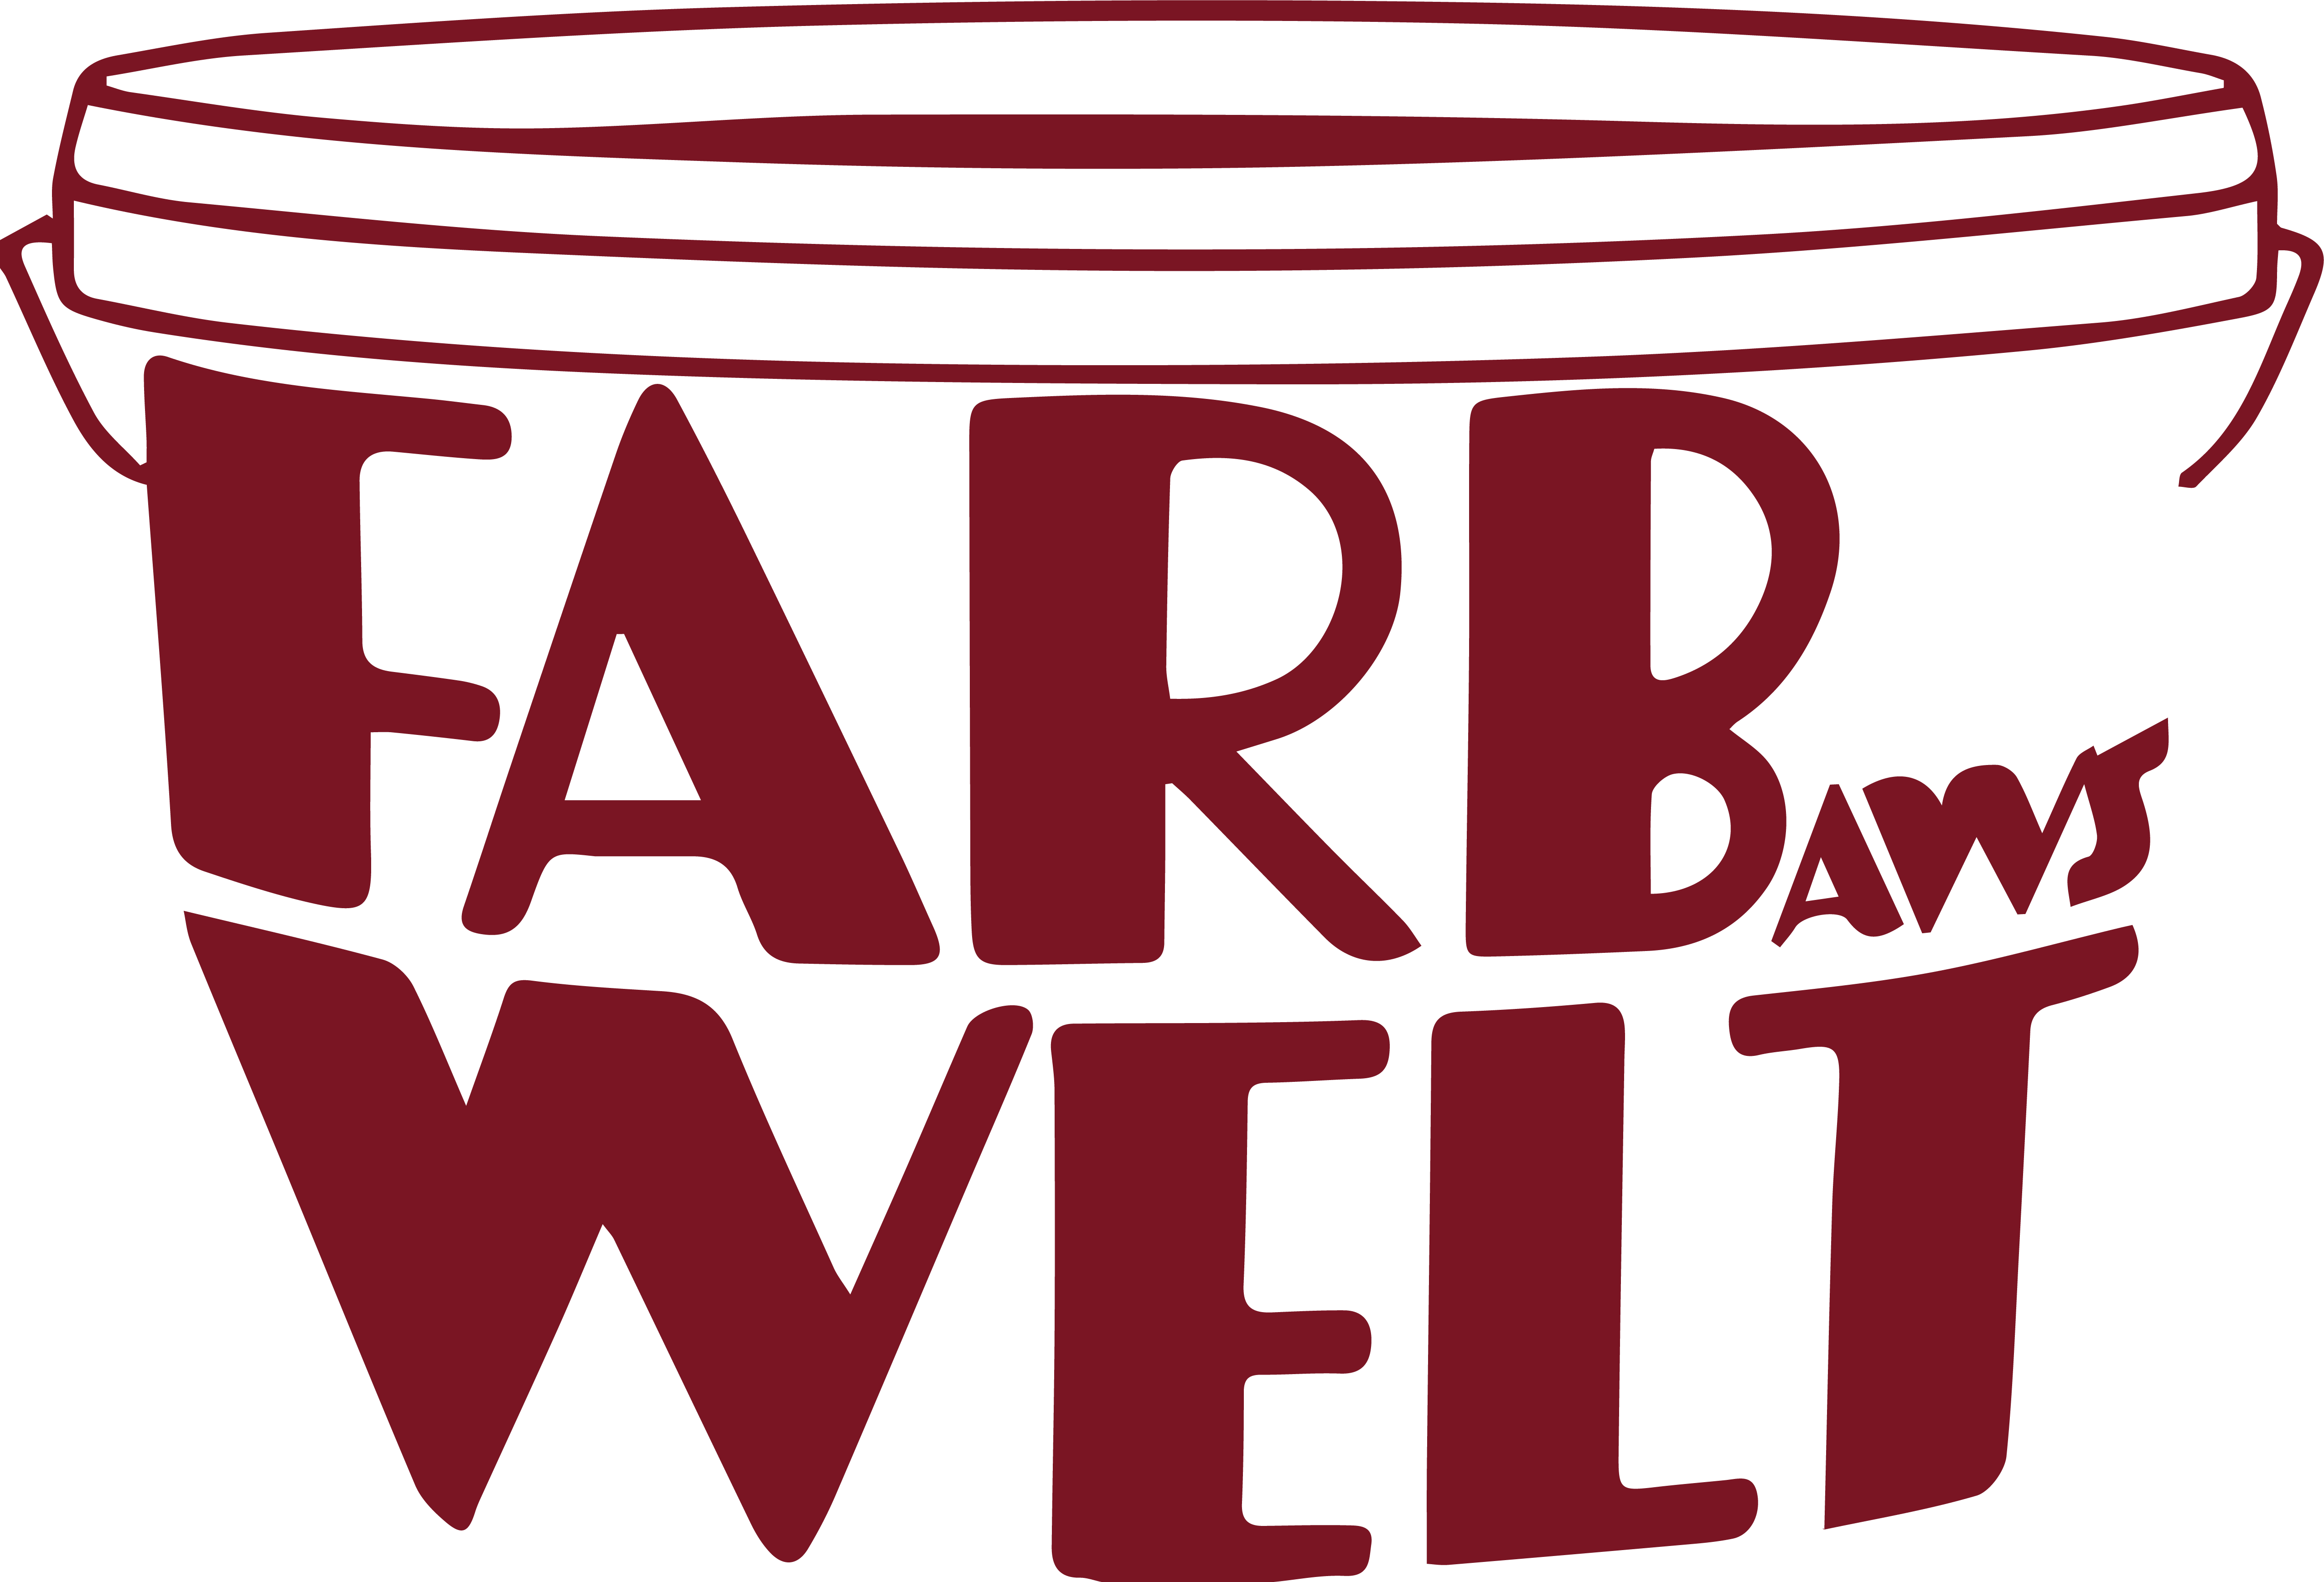 Farbwelt